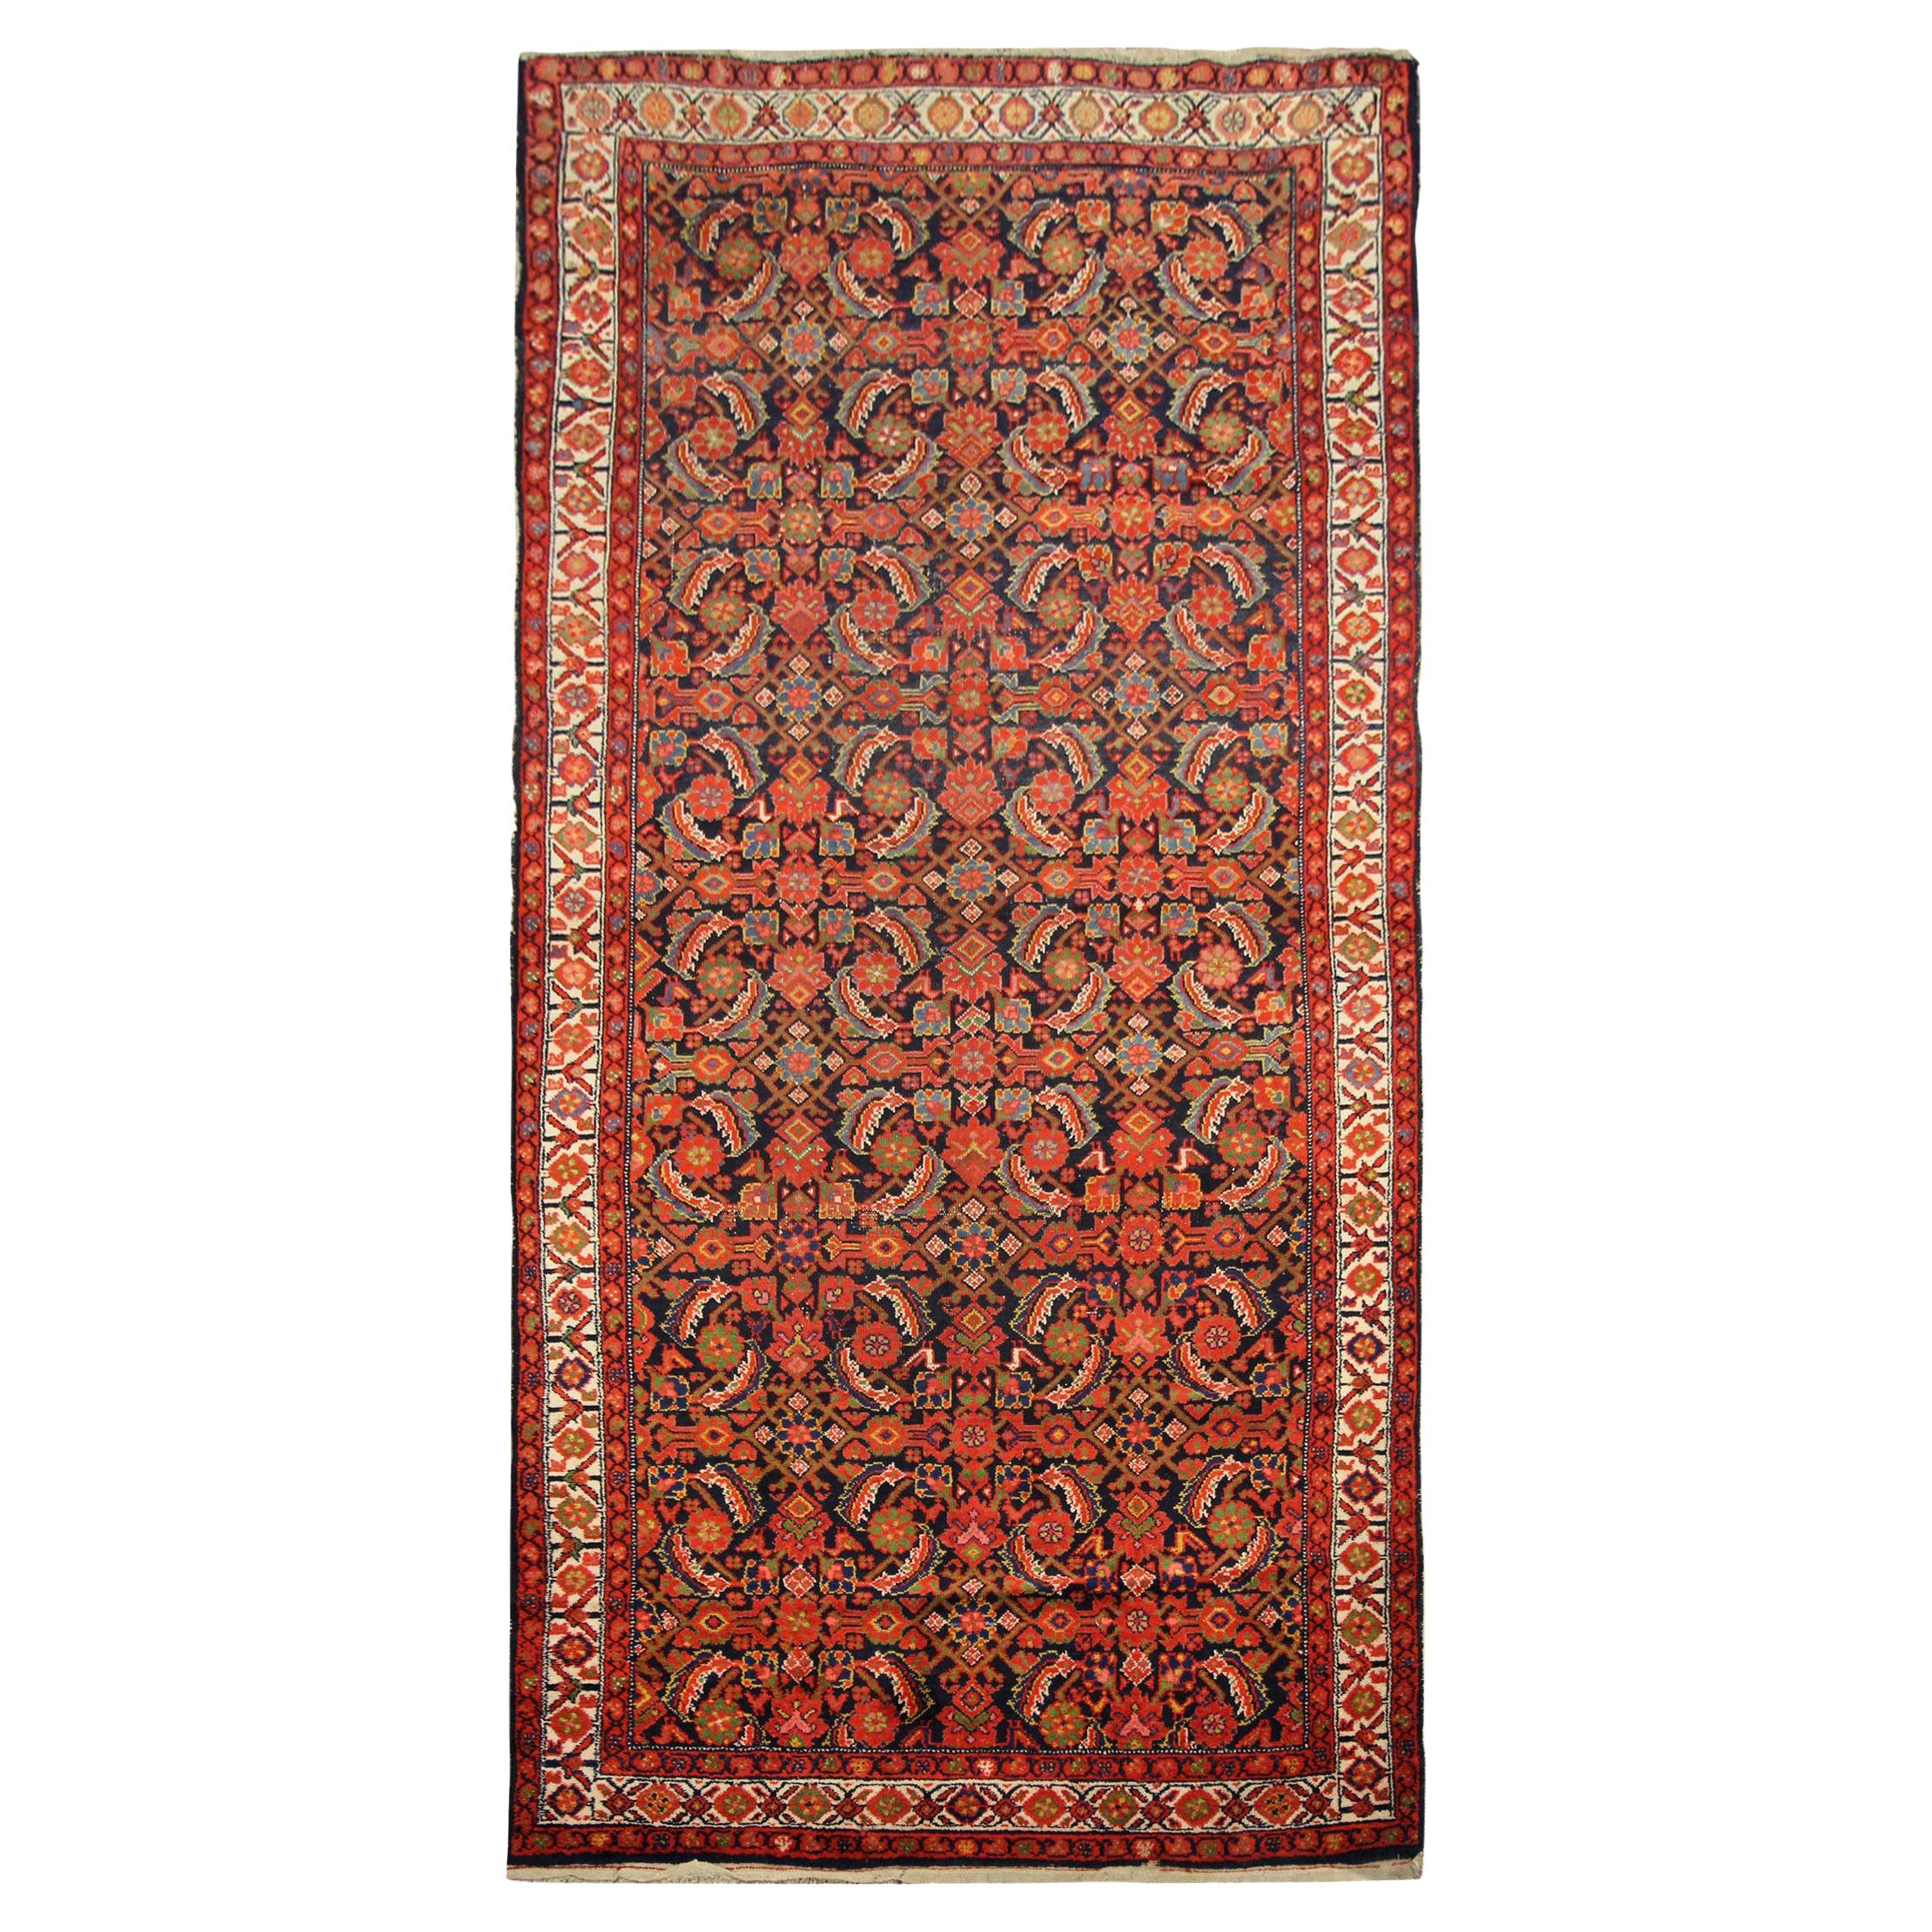 Antike Teppiche Handgewebter orientalischer Teppich aus Wolle Orange Rot Traditioneller Teppich